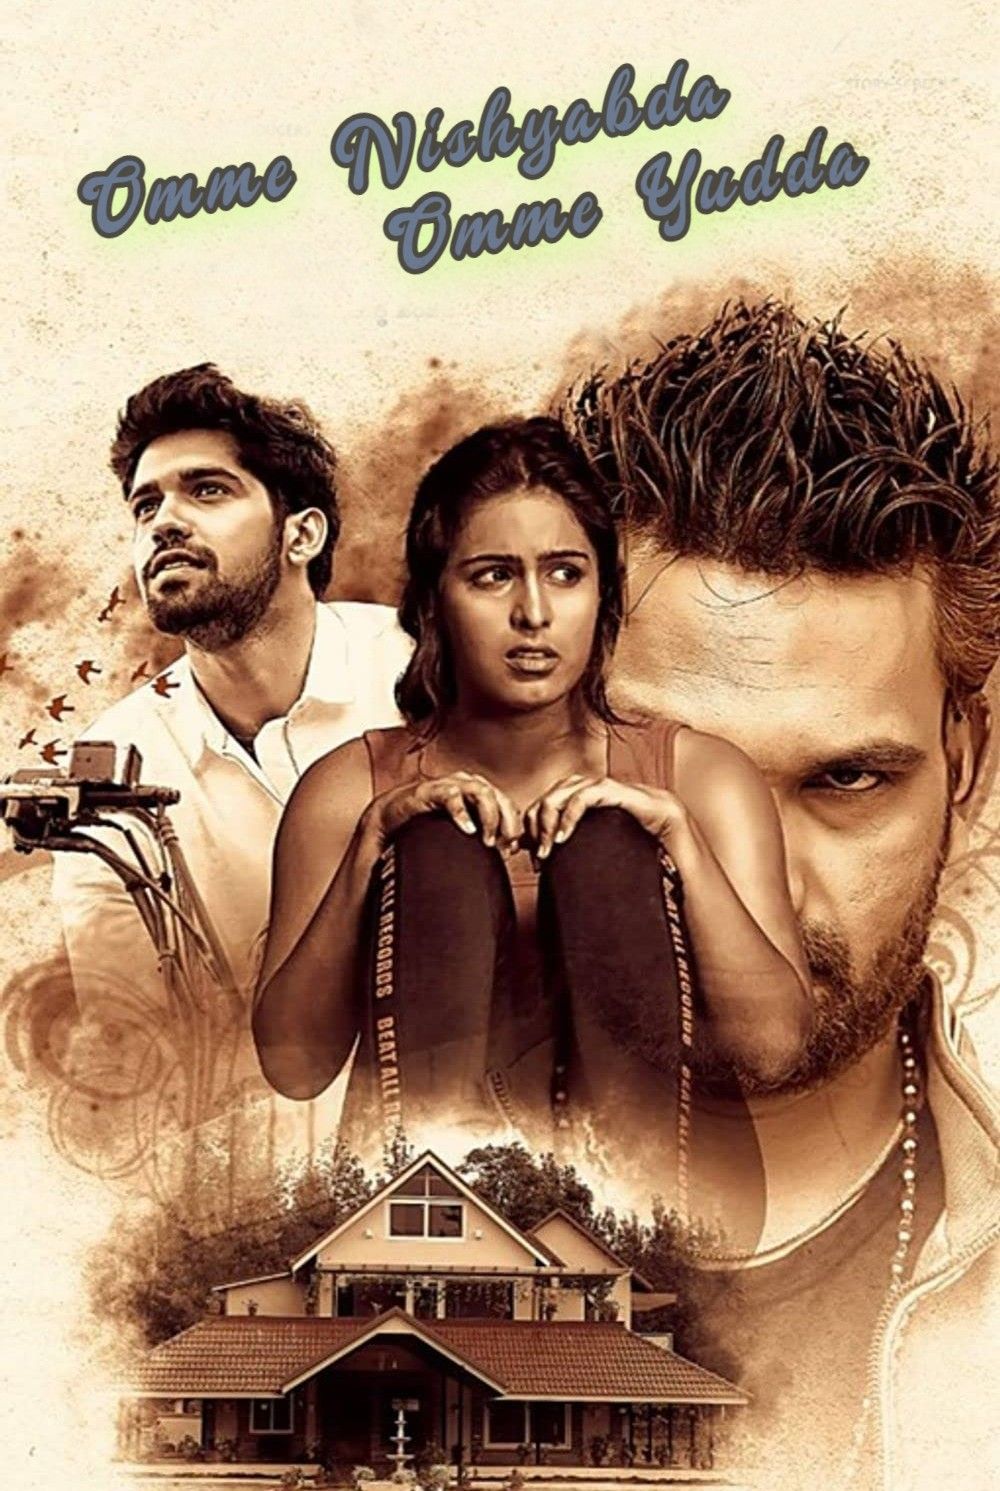 Omme Nishyabda Omme Yudda (2021) Hindi Dubbed HDTV download full movie